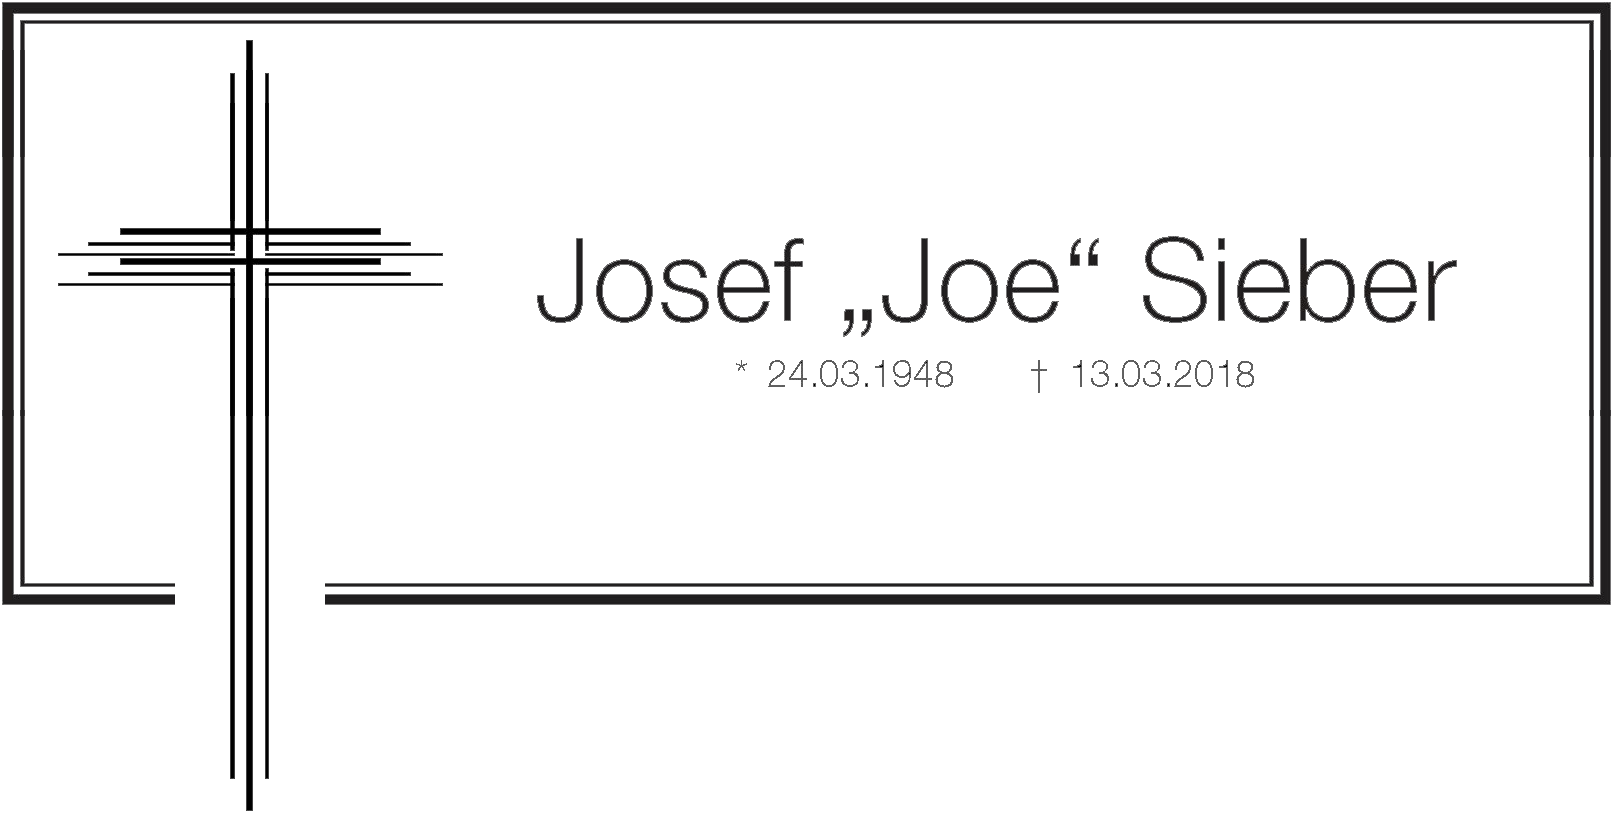 im Gedenken an Josef "Joe" Sieber